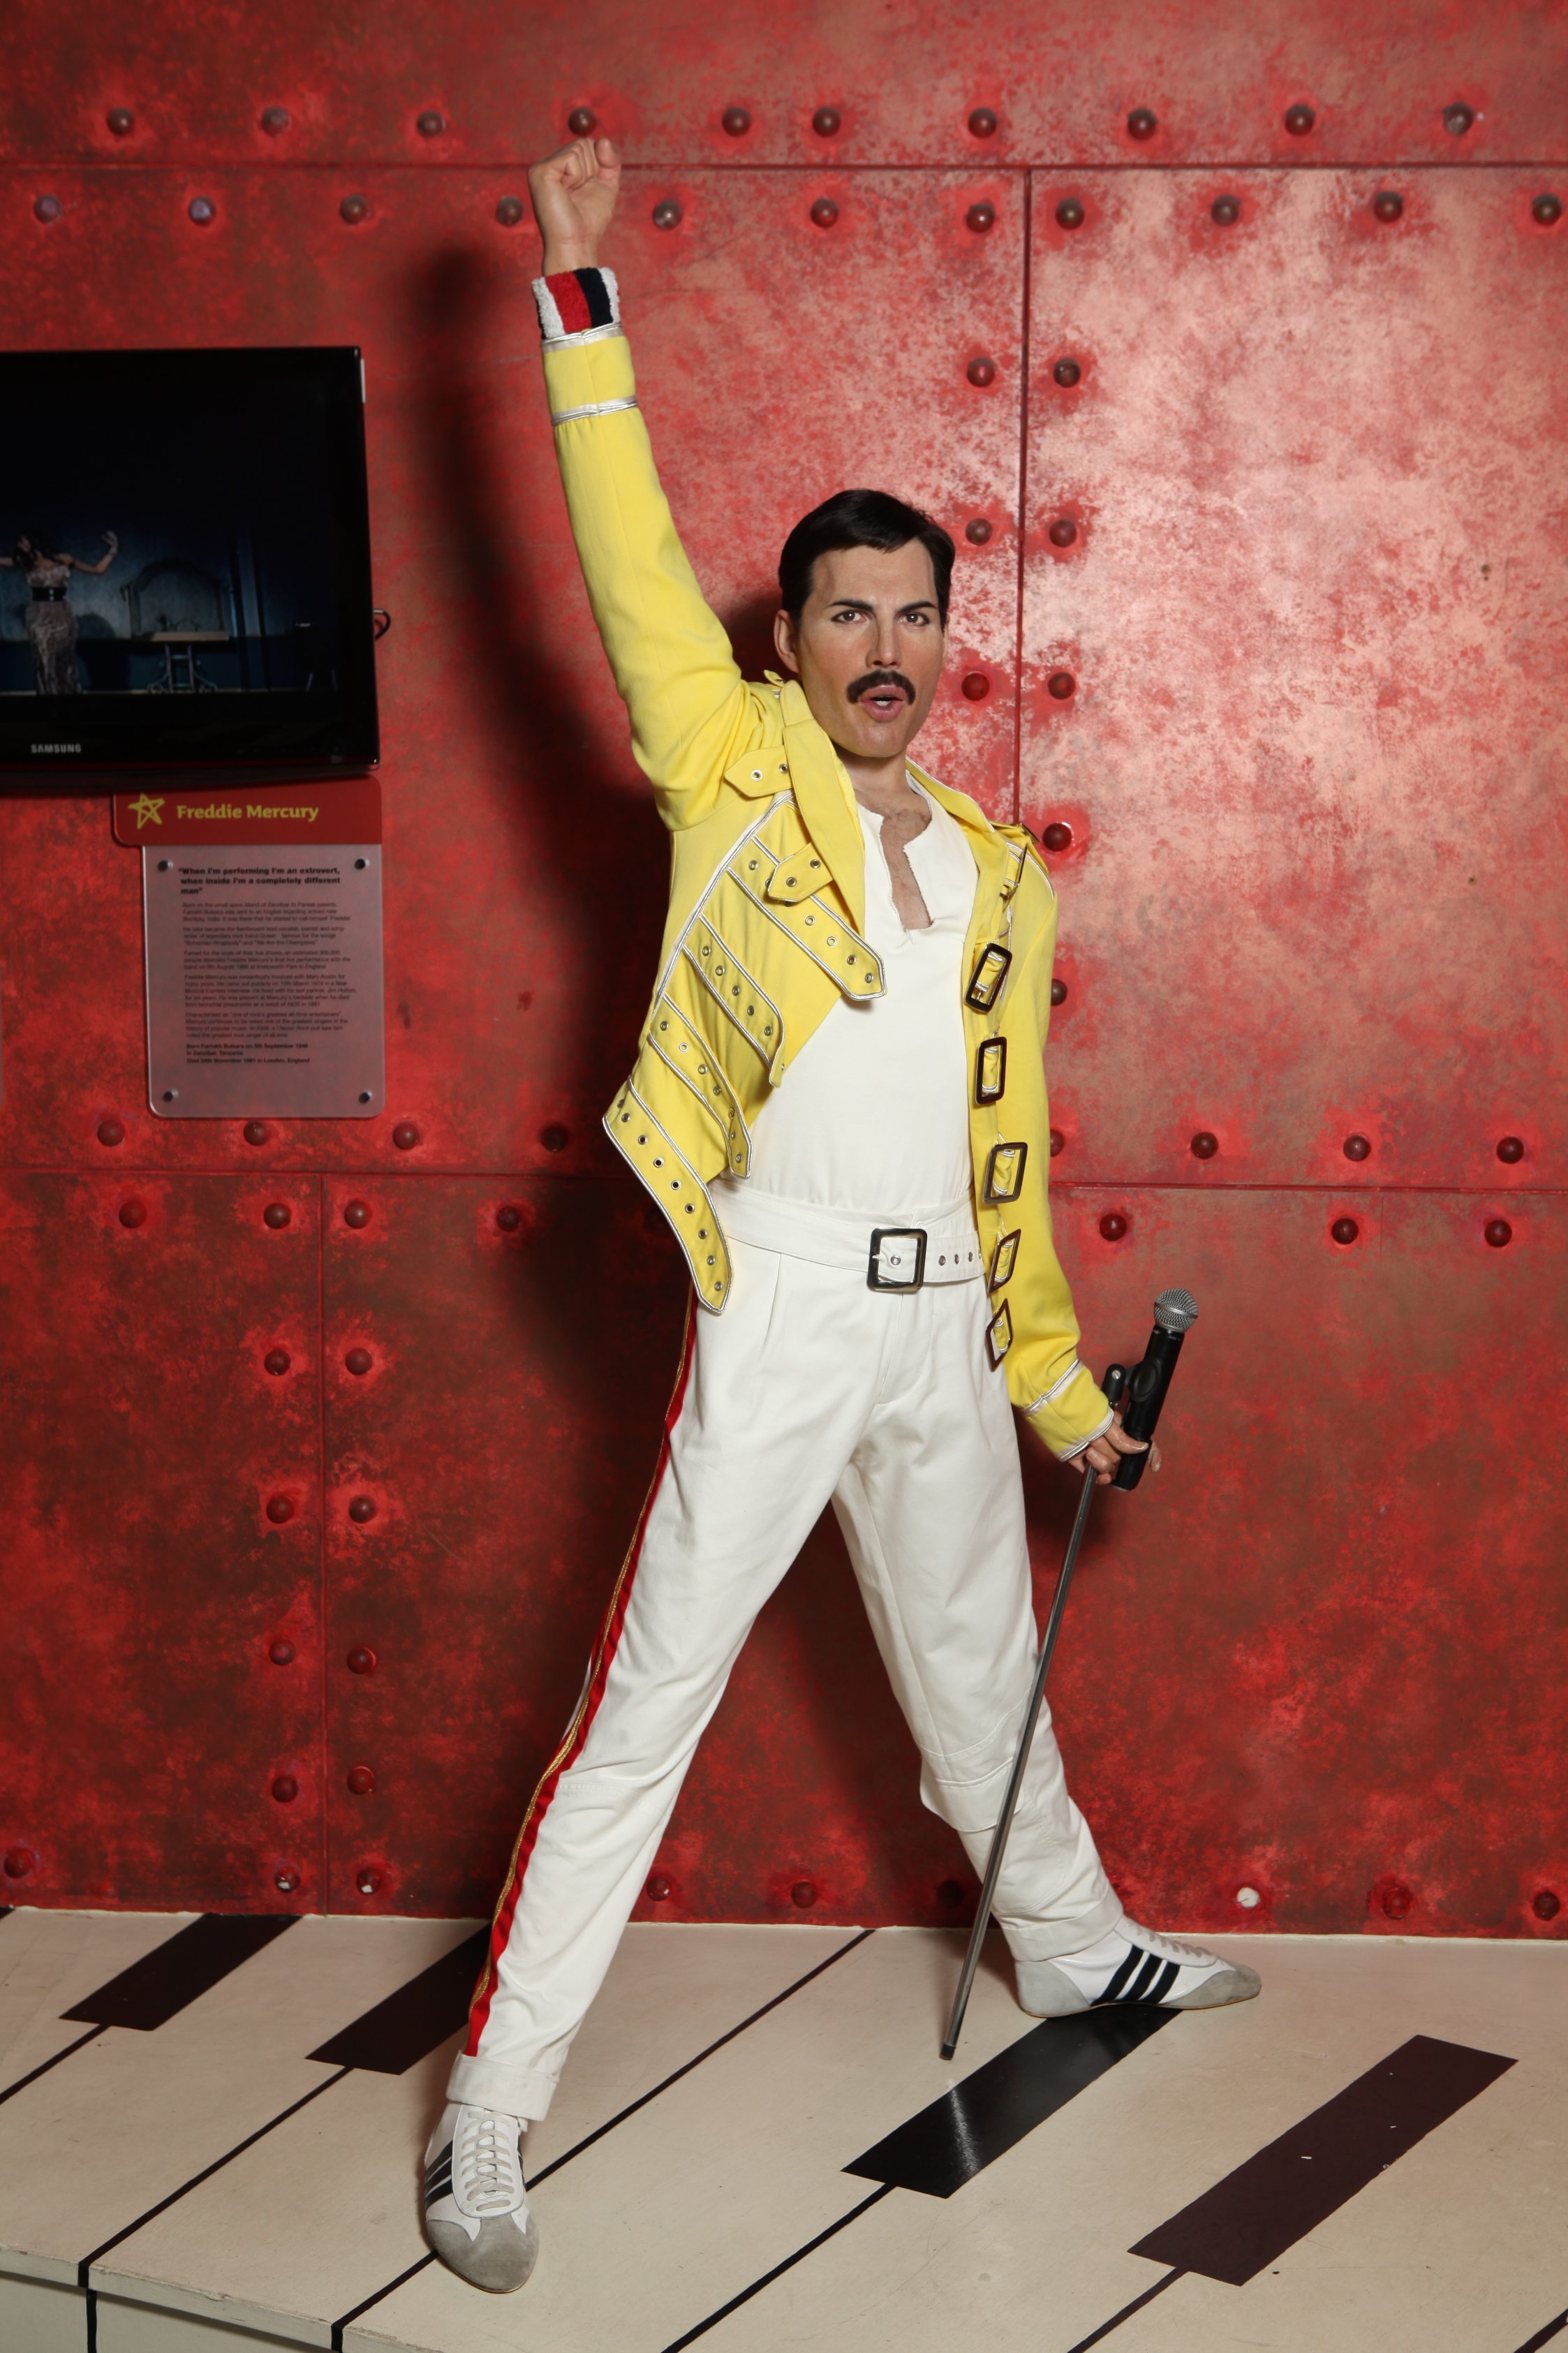 Freddie Mercury's wax figure at Madame Tussauds Blackpool